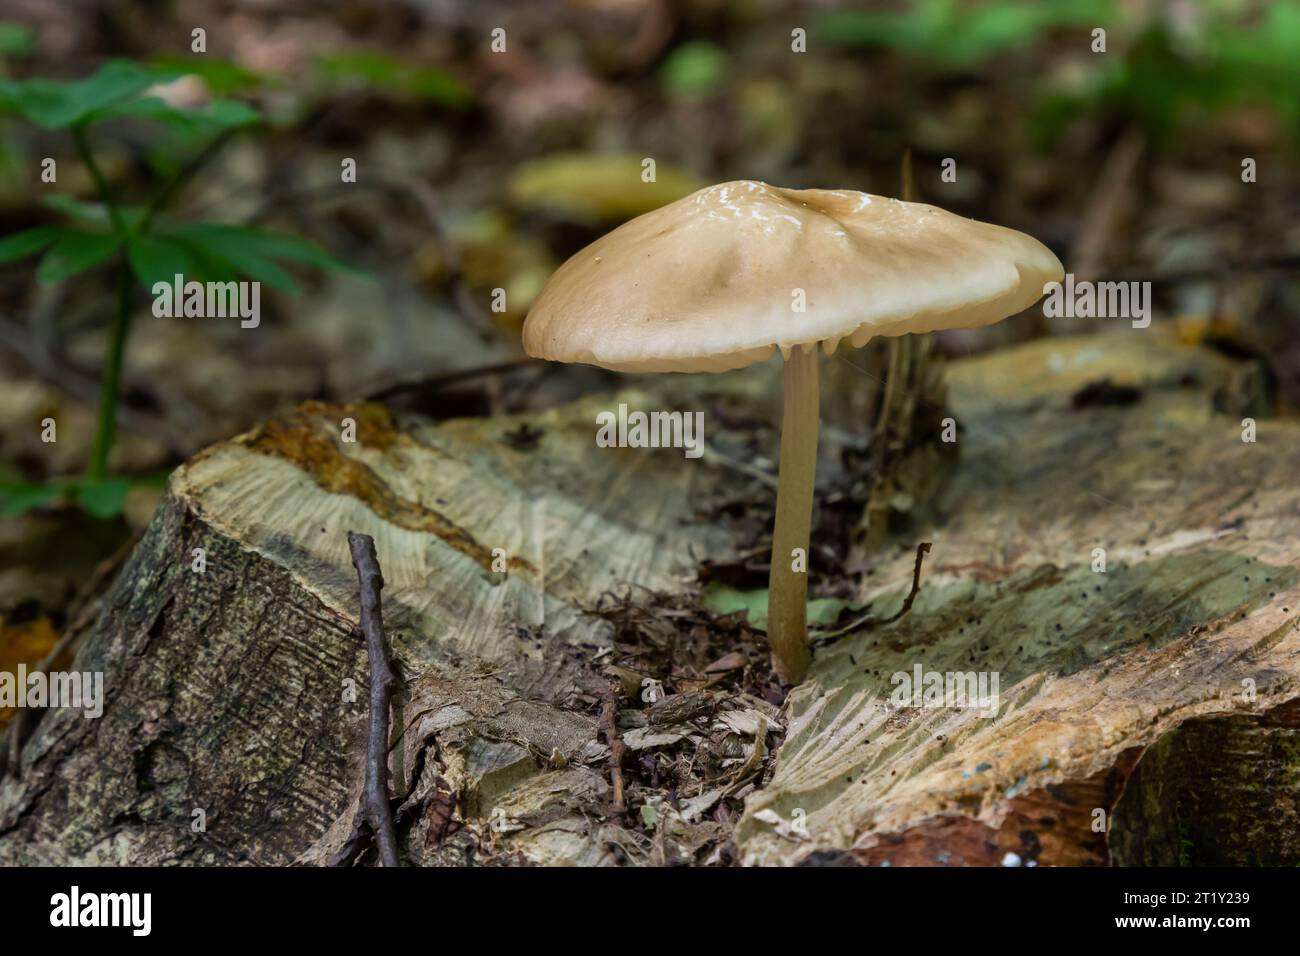 Funghi commestibili Hymenopellis radicata o Xerula radicata su un prato di montagna. Noto come fungo di radice profonda o gambo di radicamento. Fungo selvatico che cresce in Foto Stock